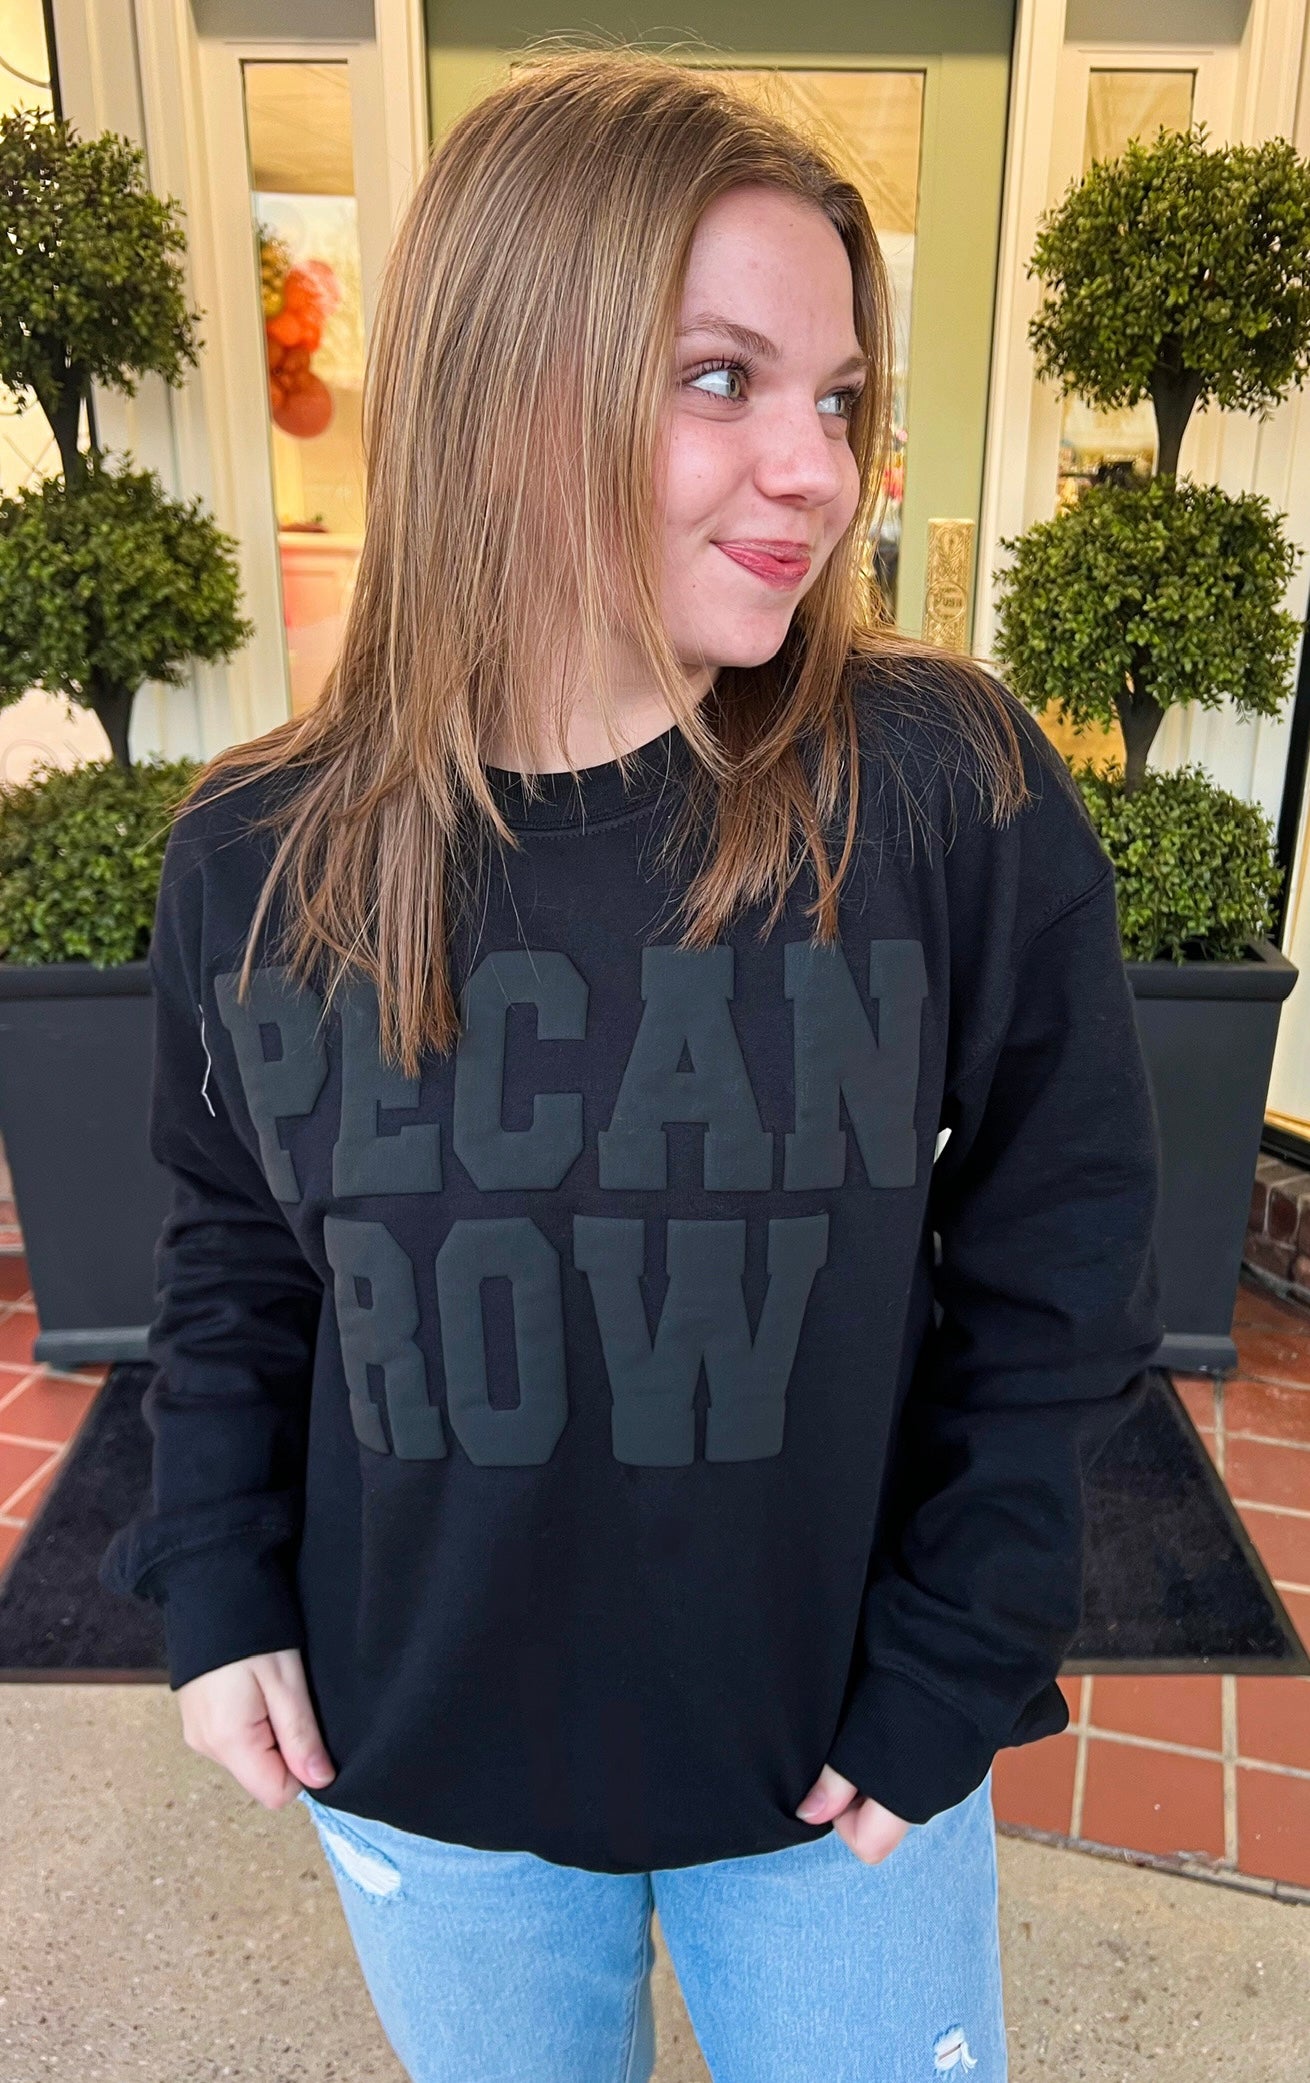 Black Pecan Row Sweatshirt